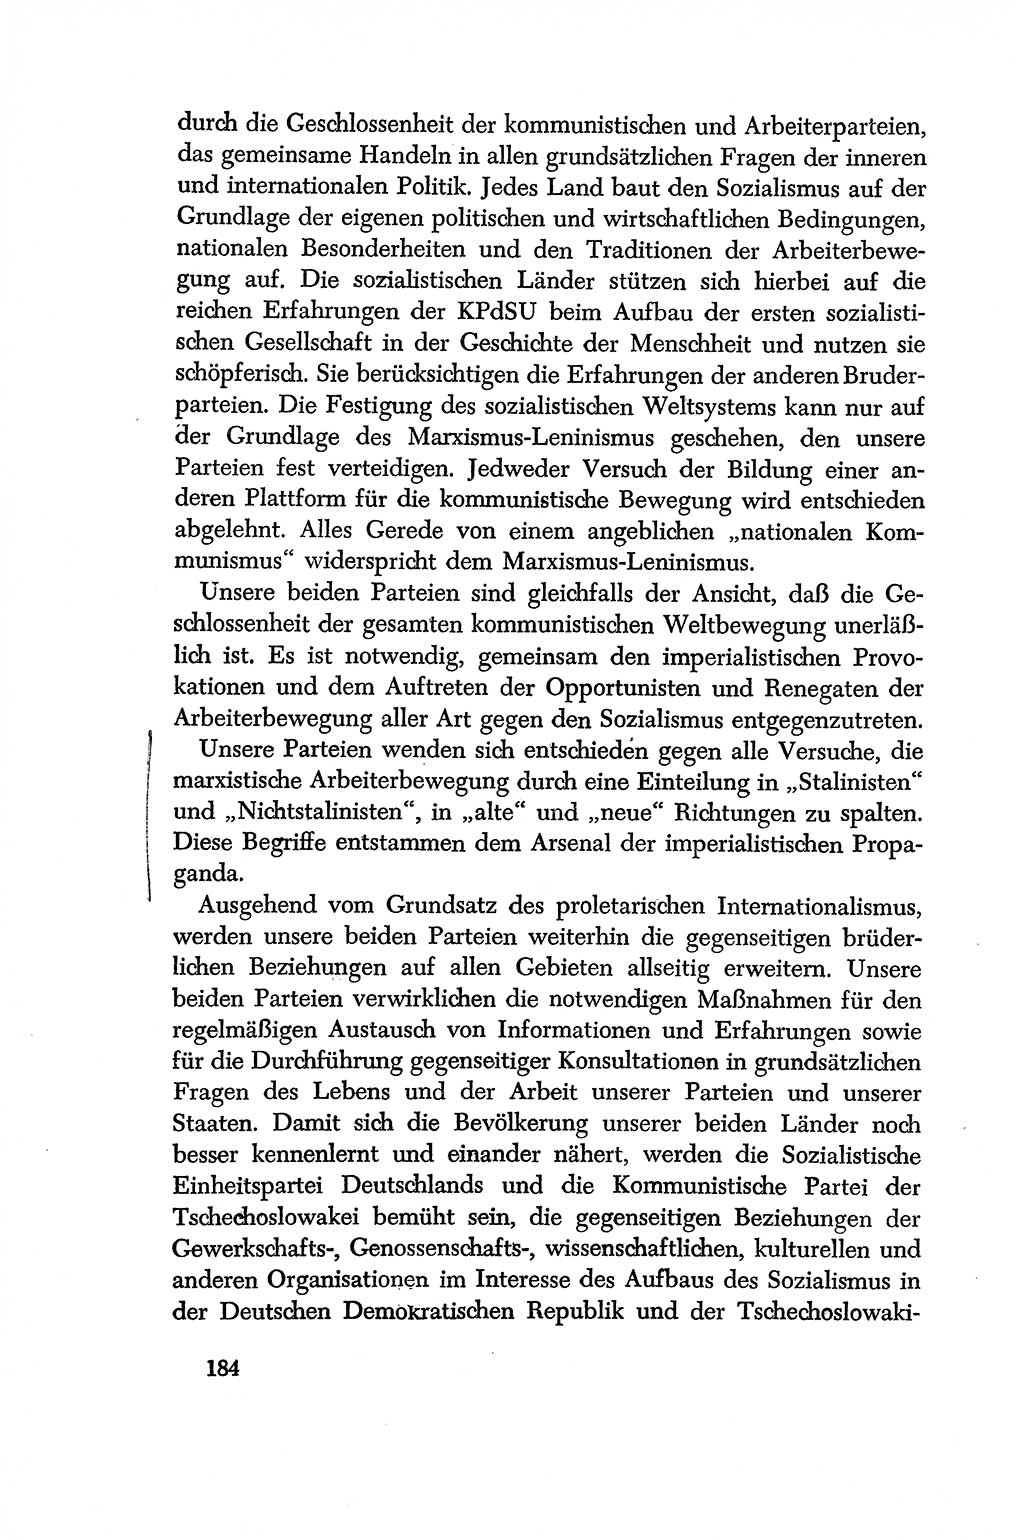 Dokumente der Sozialistischen Einheitspartei Deutschlands (SED) [Deutsche Demokratische Republik (DDR)] 1956-1957, Seite 184 (Dok. SED DDR 1956-1957, S. 184)